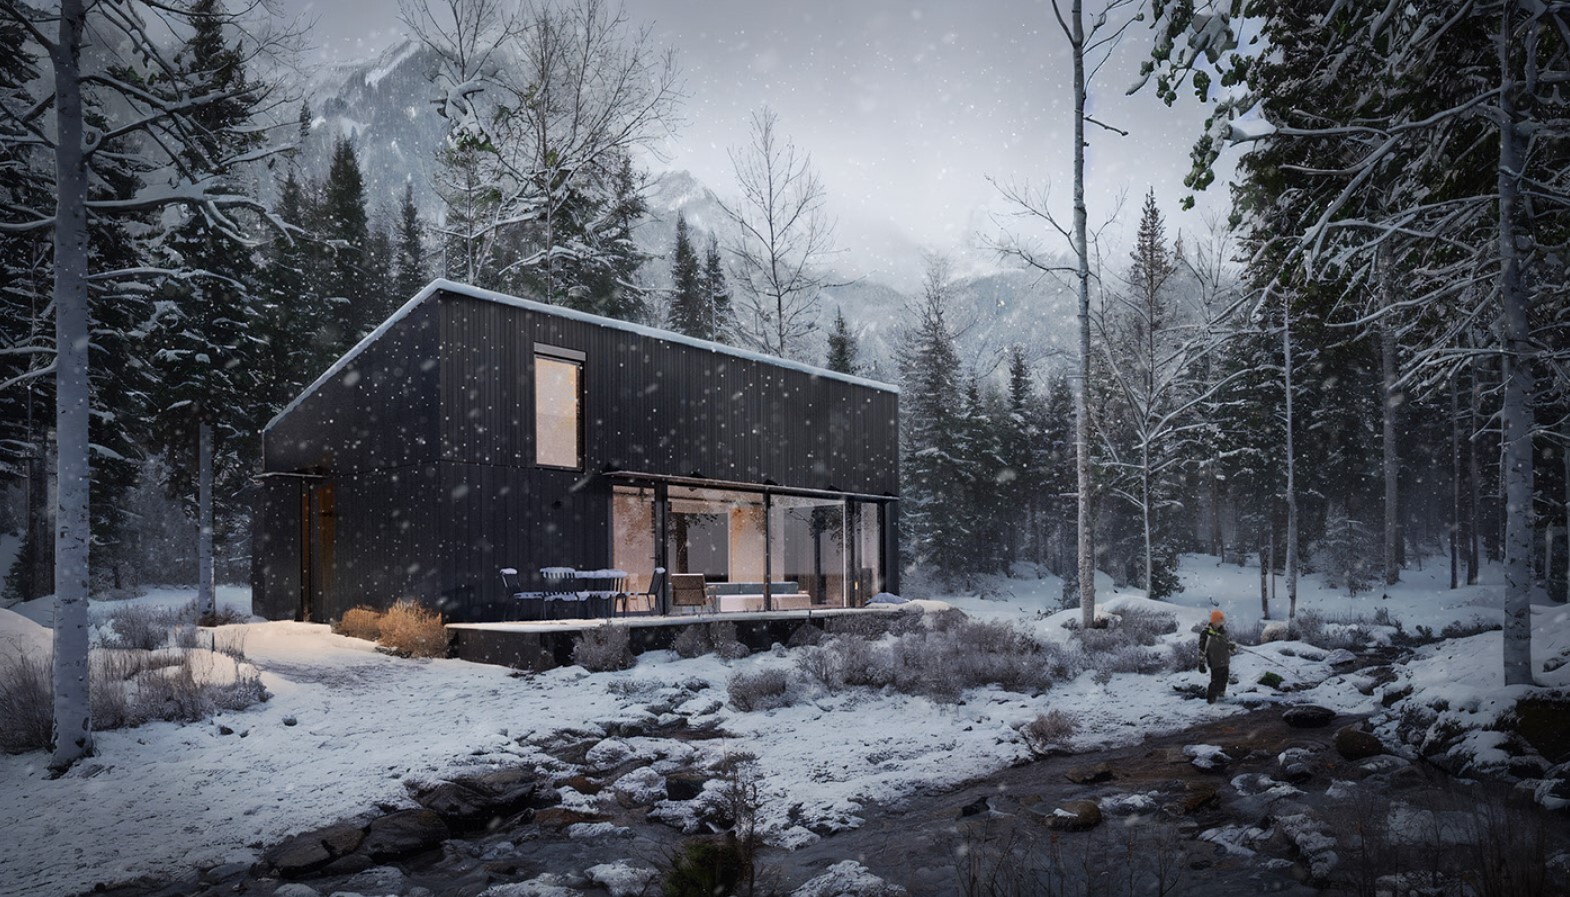 ArtStation - Snow Cabin